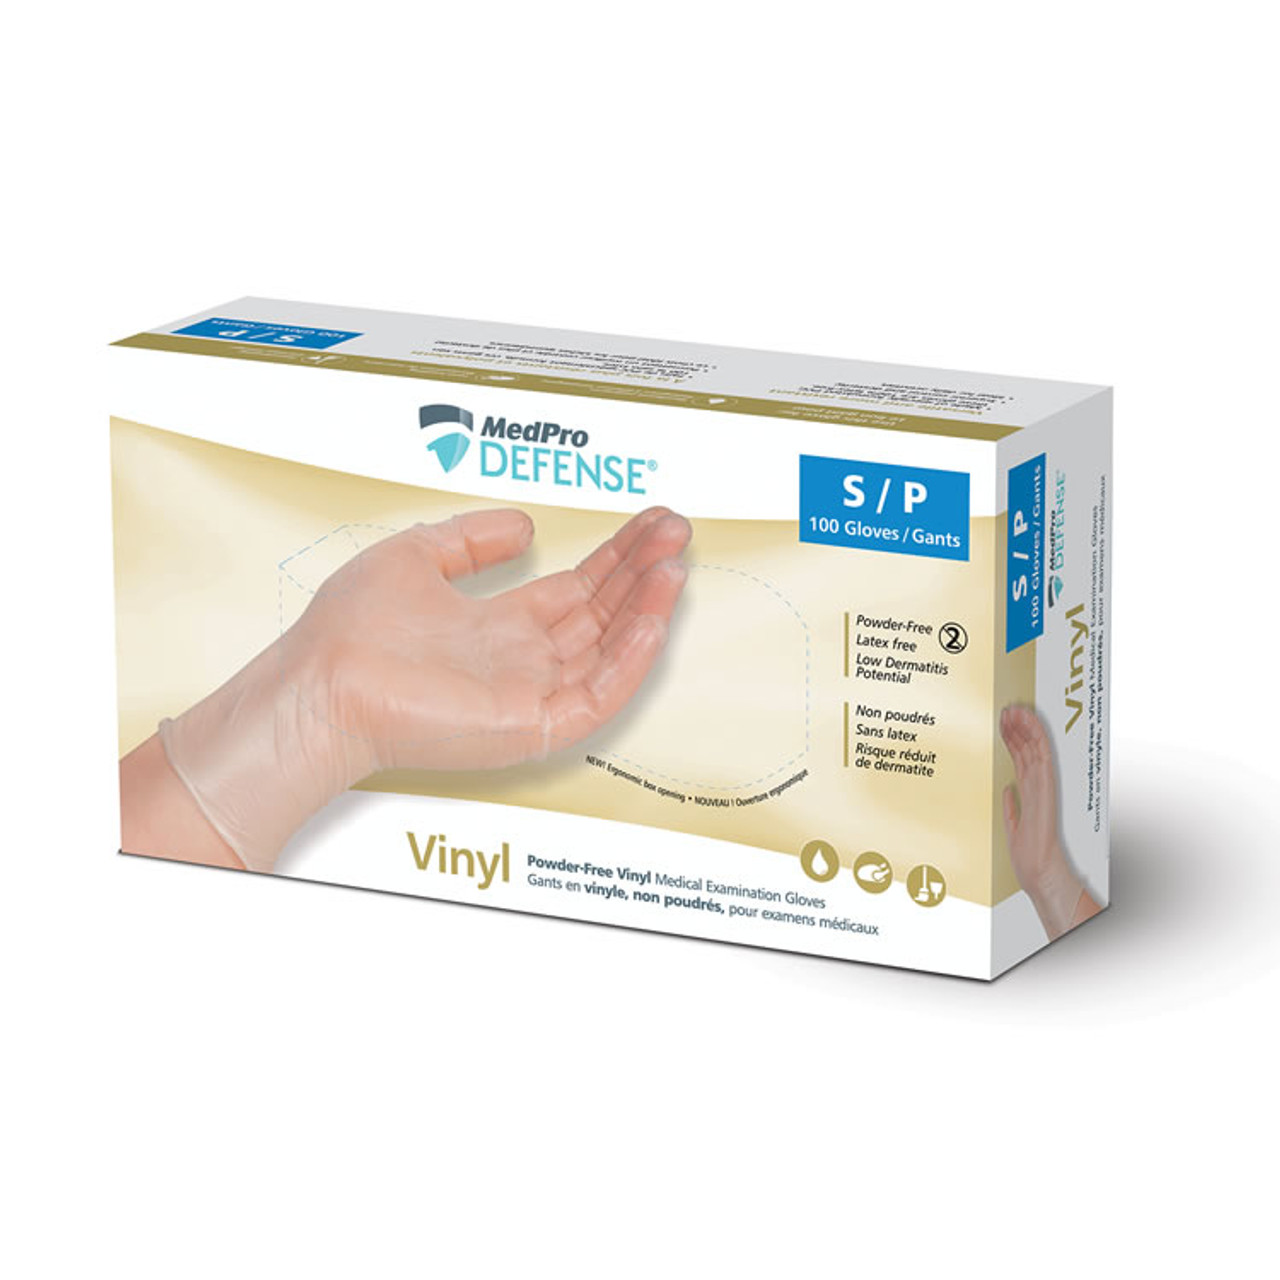 Boîte de Gants Vinyle M - Protection & Confort